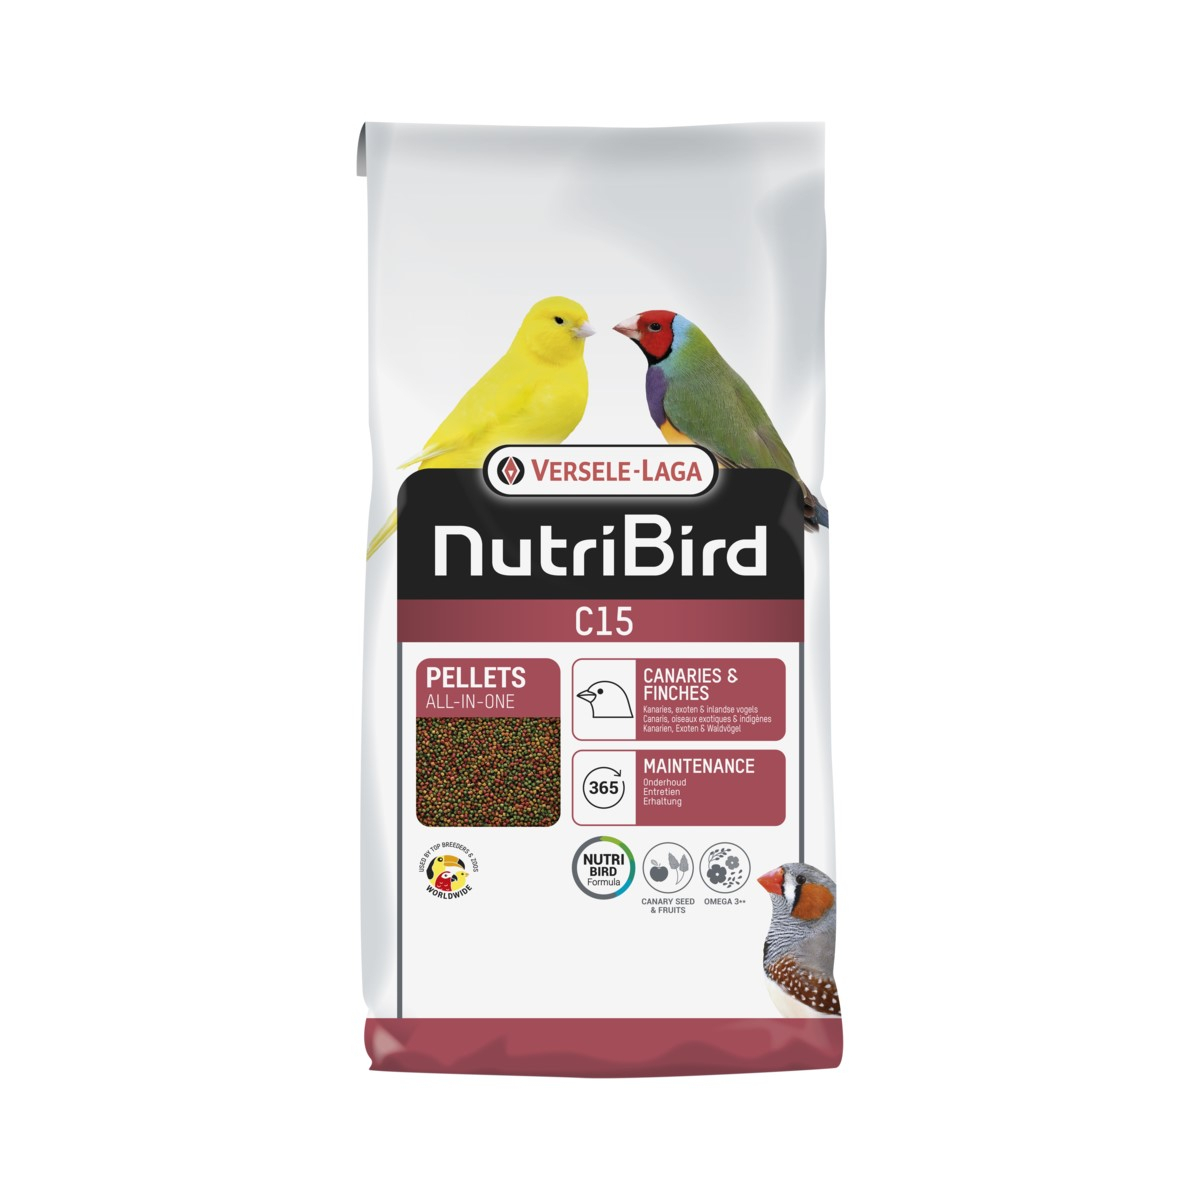 NutriBird C15 granulado extrudidos para canários, aves exóticas e indígenas